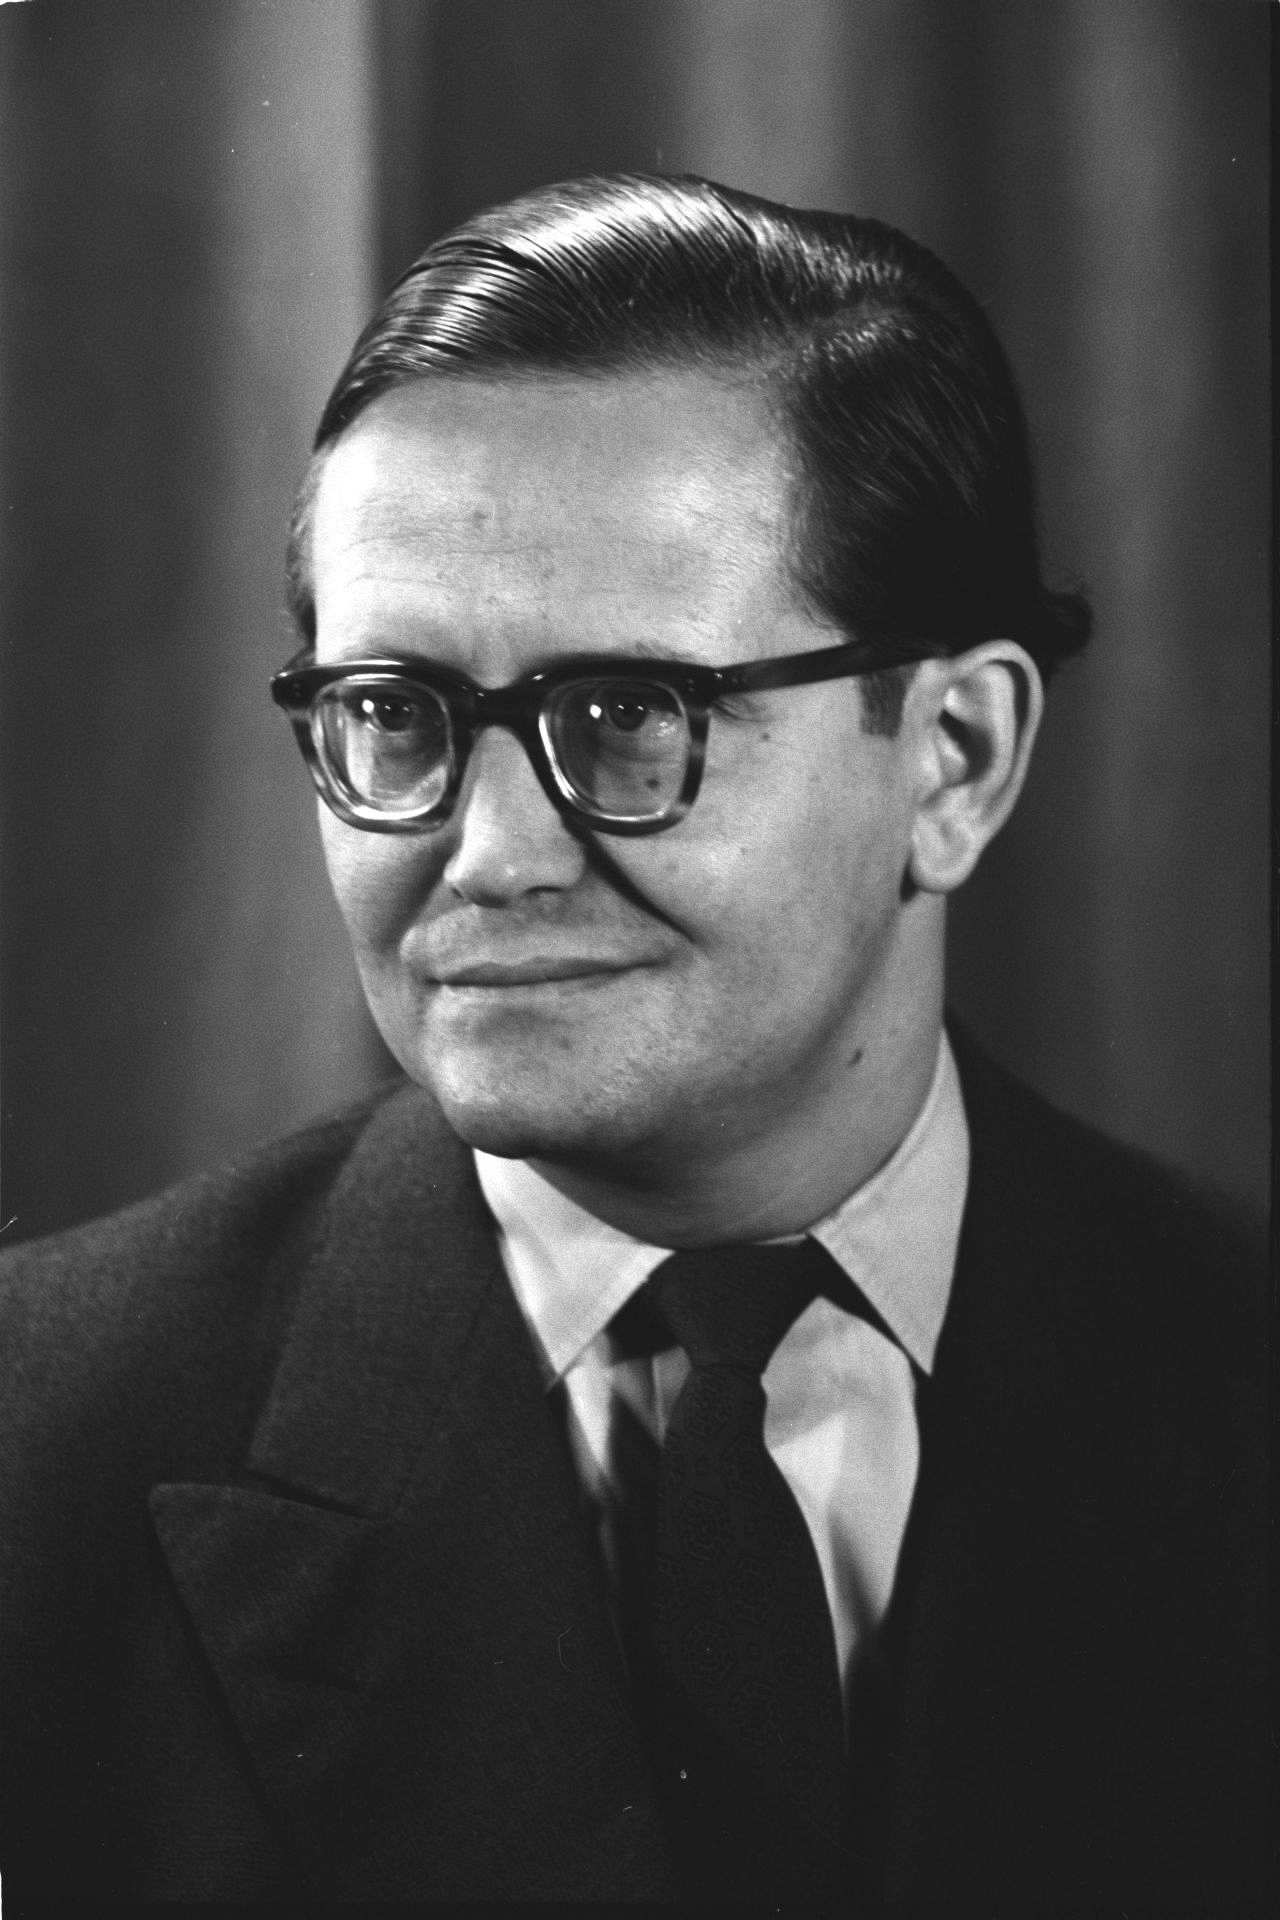 Porträtfoto von Karl-Eduard von Schnitzler, Journalist und Chefkommentator des Deutschen Fernsehfunks in der DDR.